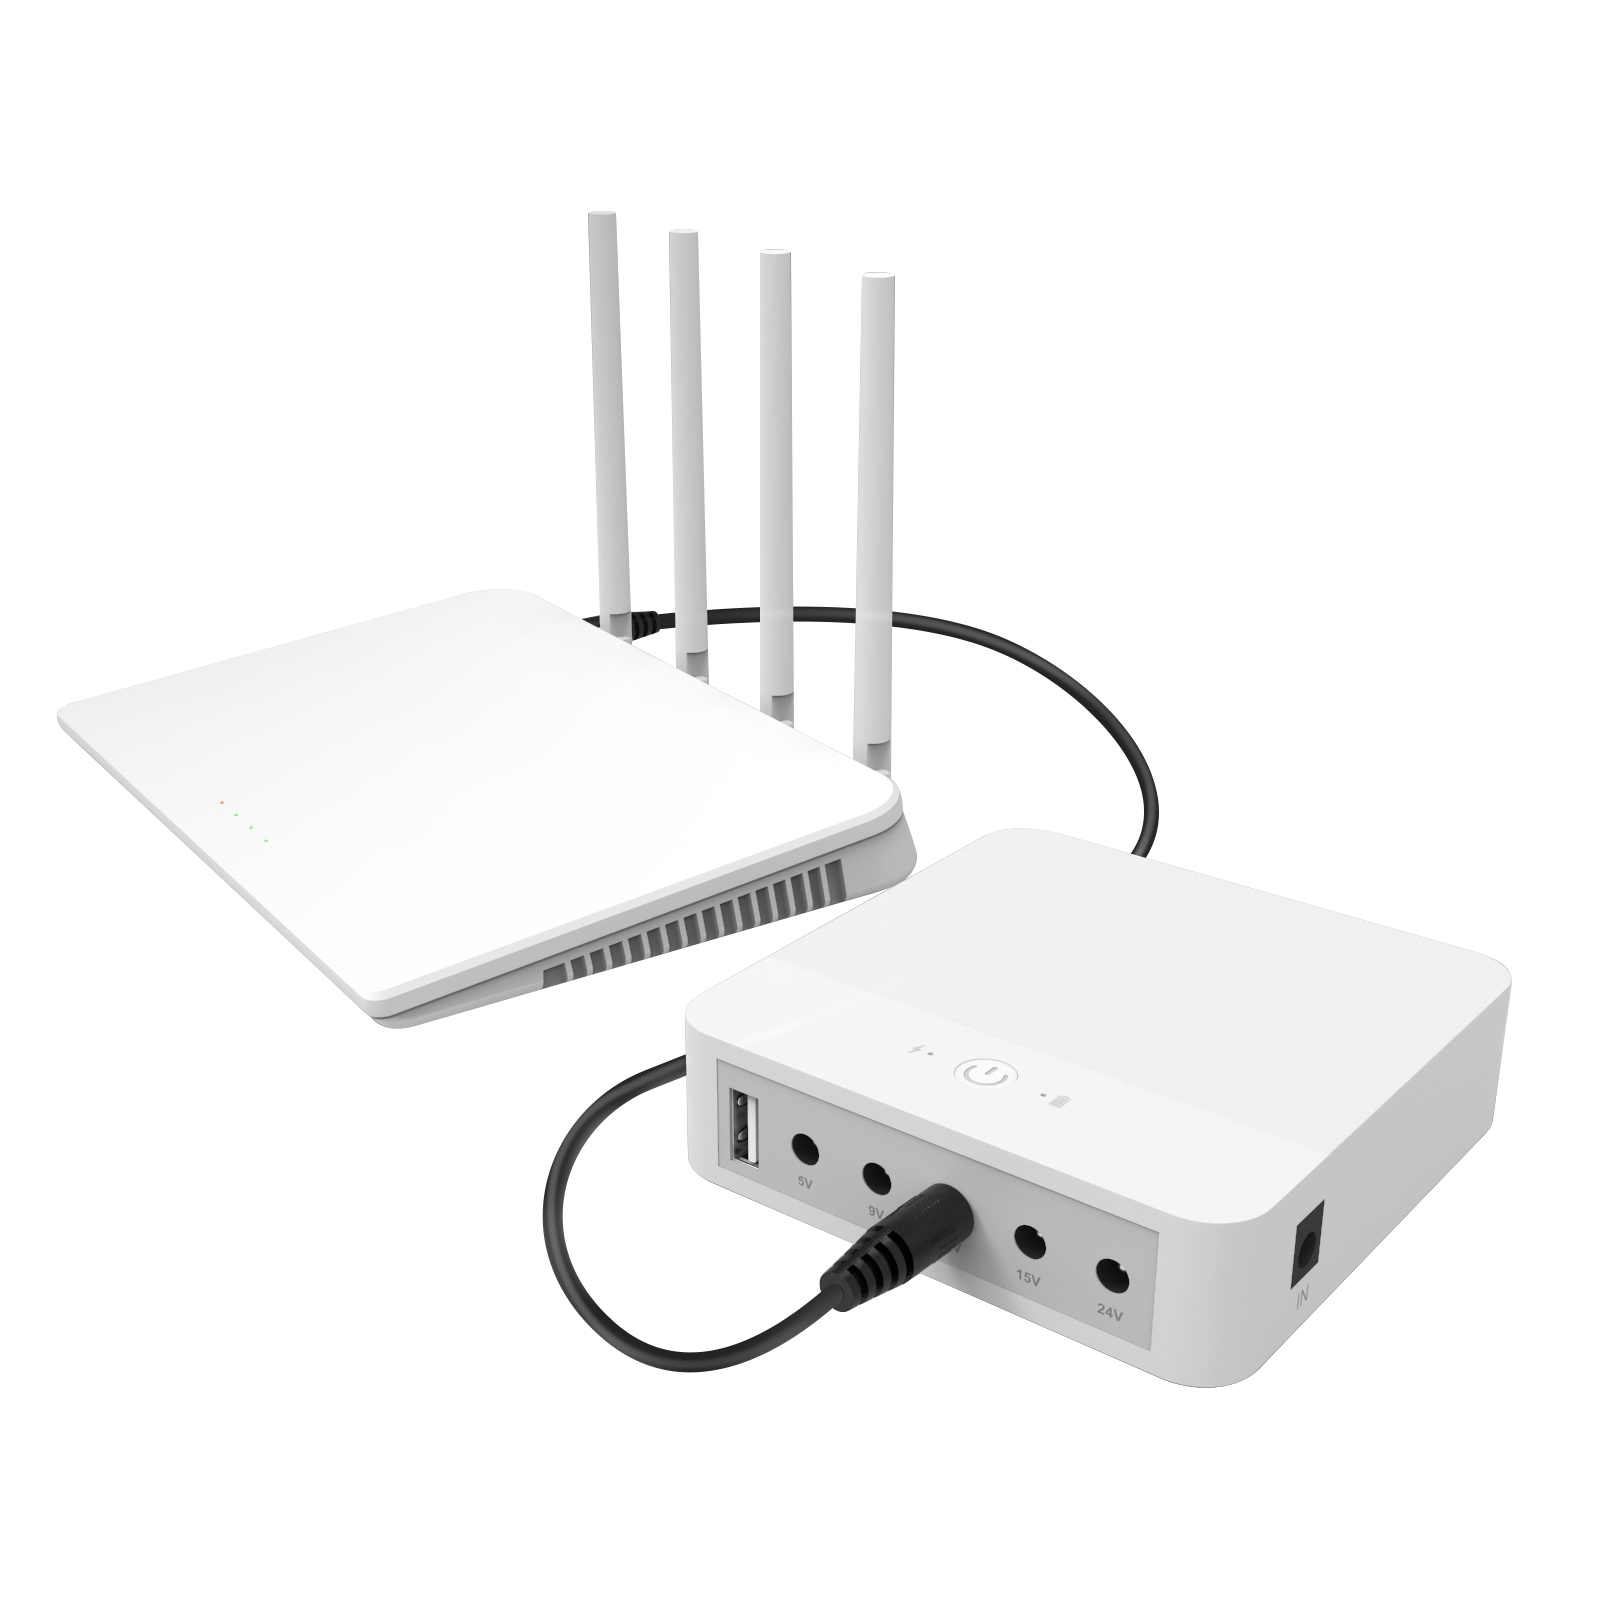 WGP Smart Mini Ups fir WiFi Router keng Paus Ups 12V